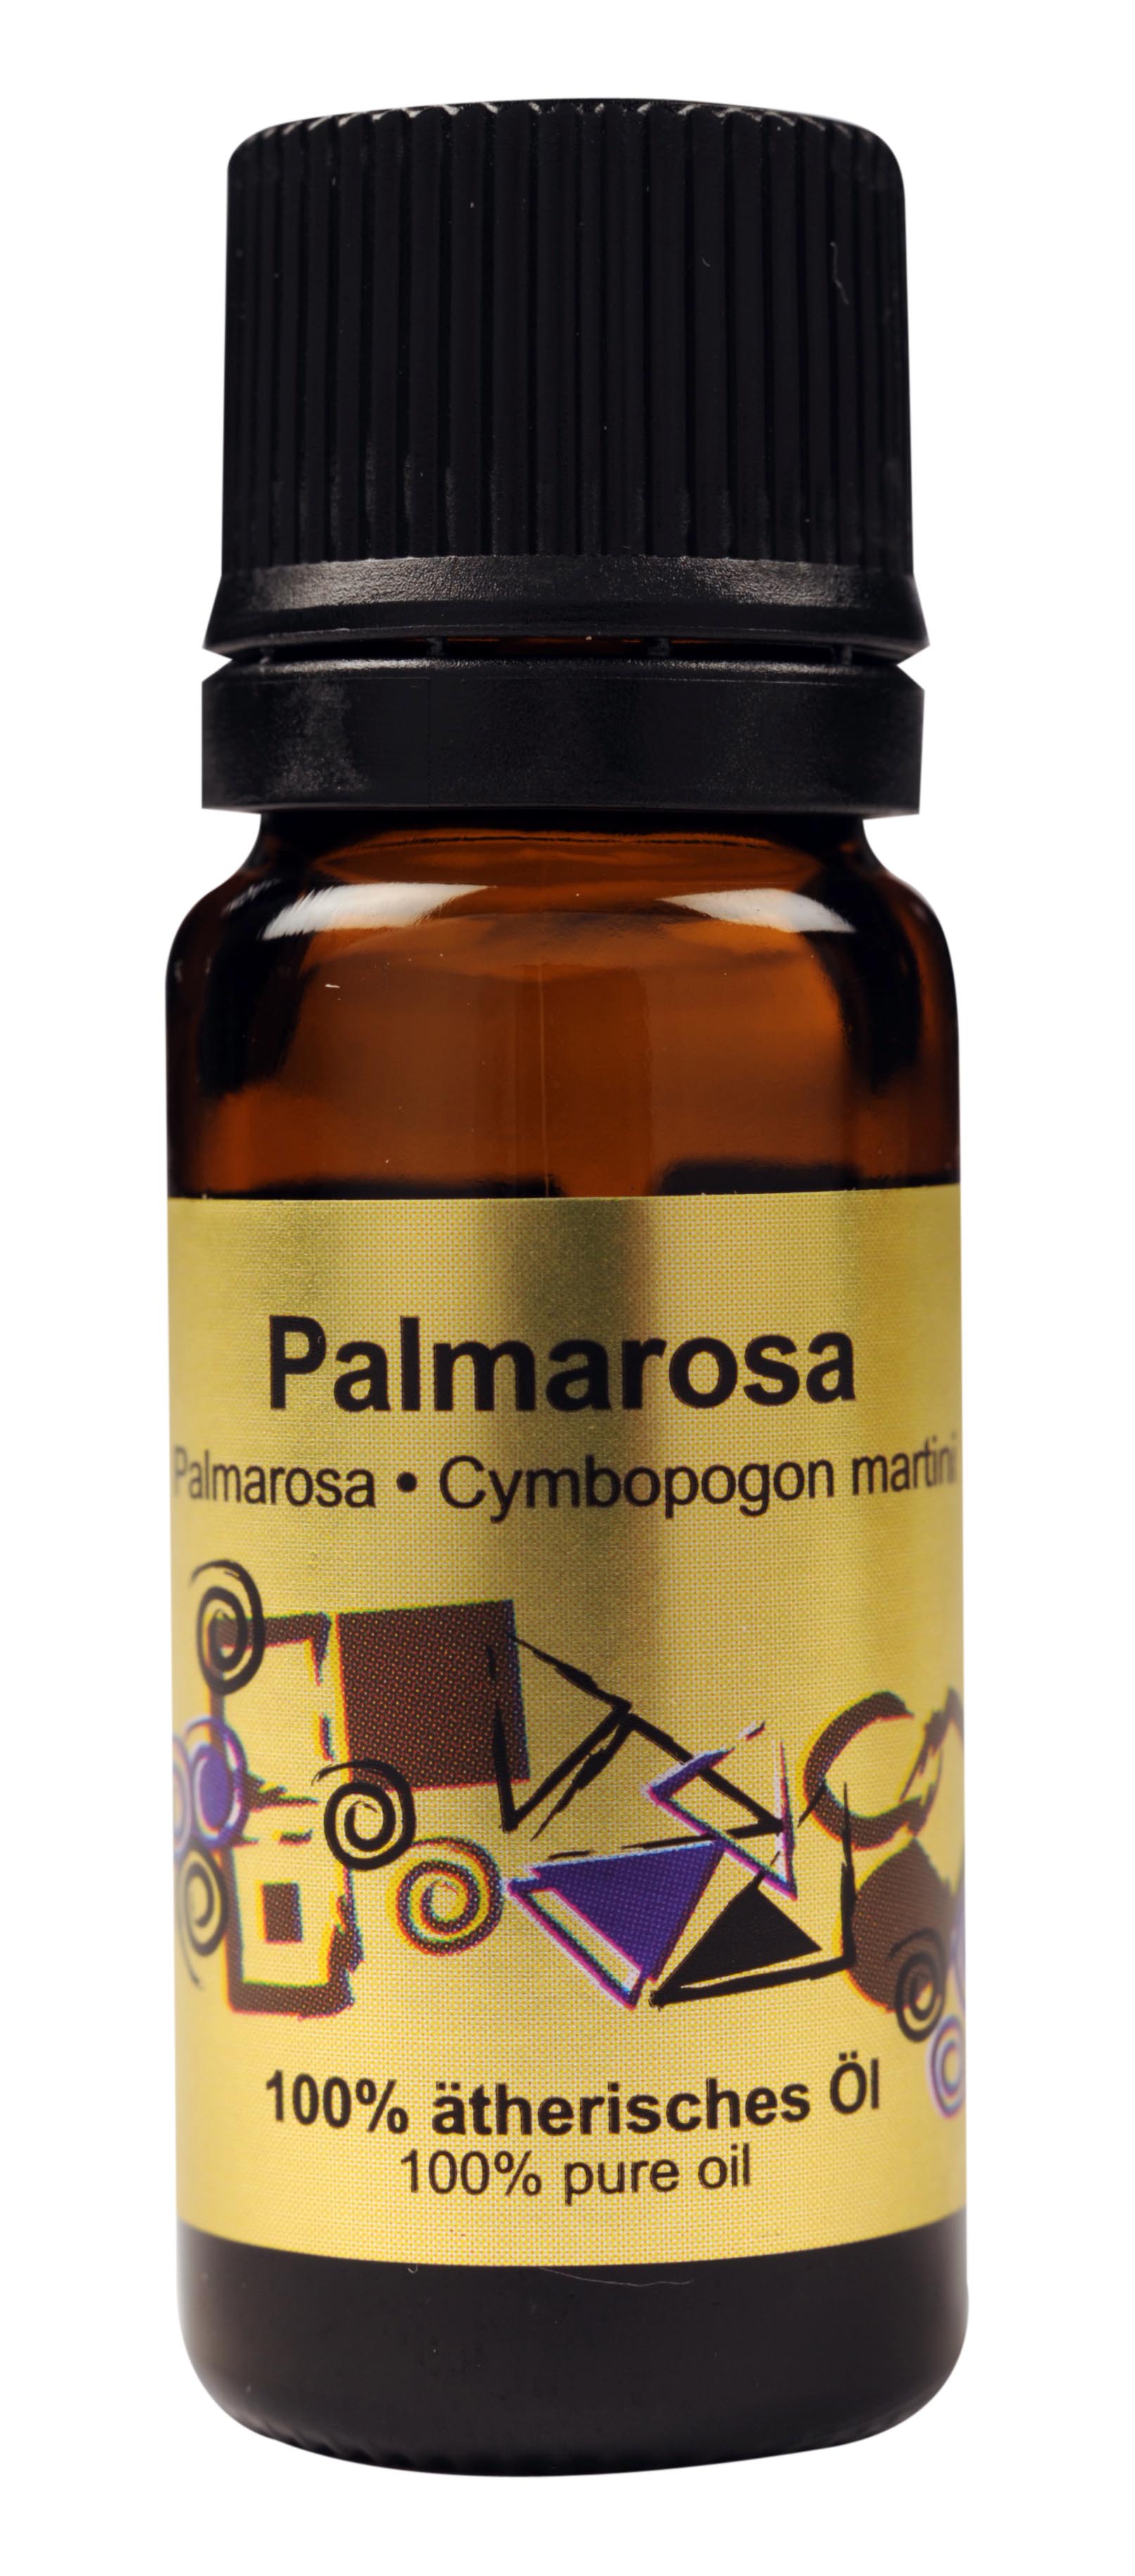 Ätherisches Palmarosa-Öl 10ml